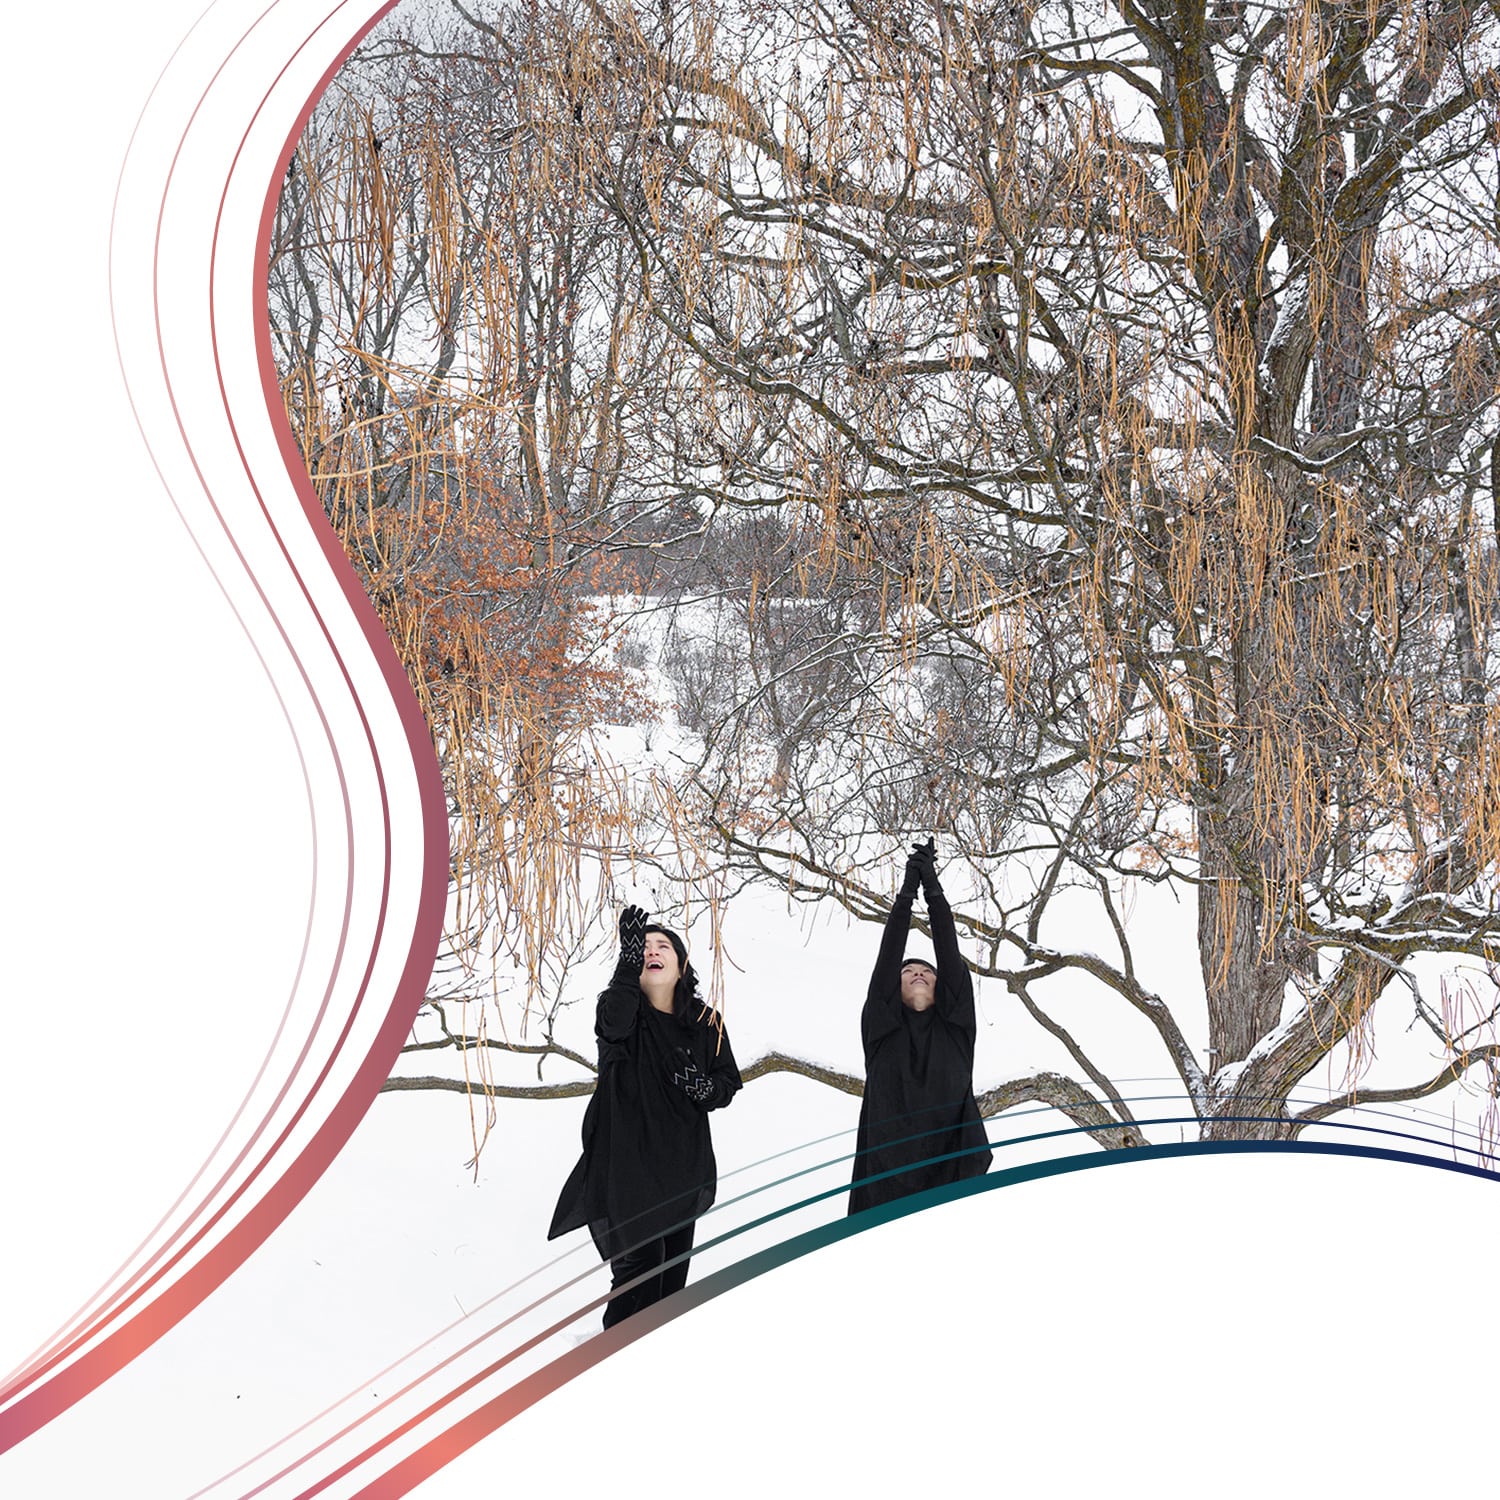 La soprano Noriko Hashimoto (à gauche)
                                                        
                                                et la danseuse et chorégraphe Takako
                                                Segawa se produisent dans 'Sho ga nai'
                                                à l'Arboretum du Dominion à Ottawa.
                                                (Photo : Sarolta Gyoker)